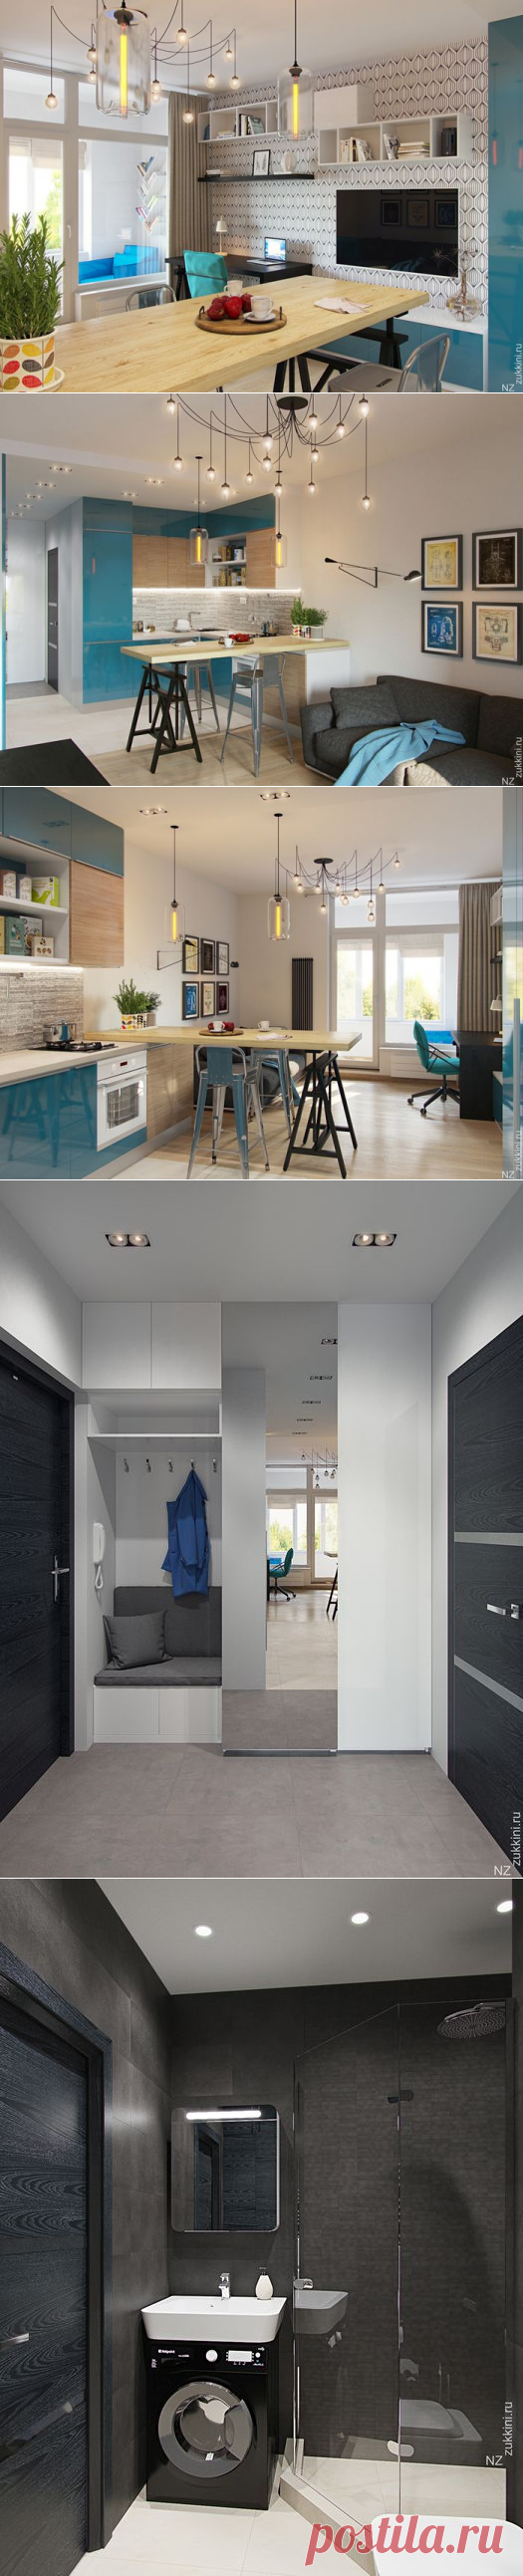 Современный дизайнерский интерьер квартиры 29 кв. м. — Роскошь и уют